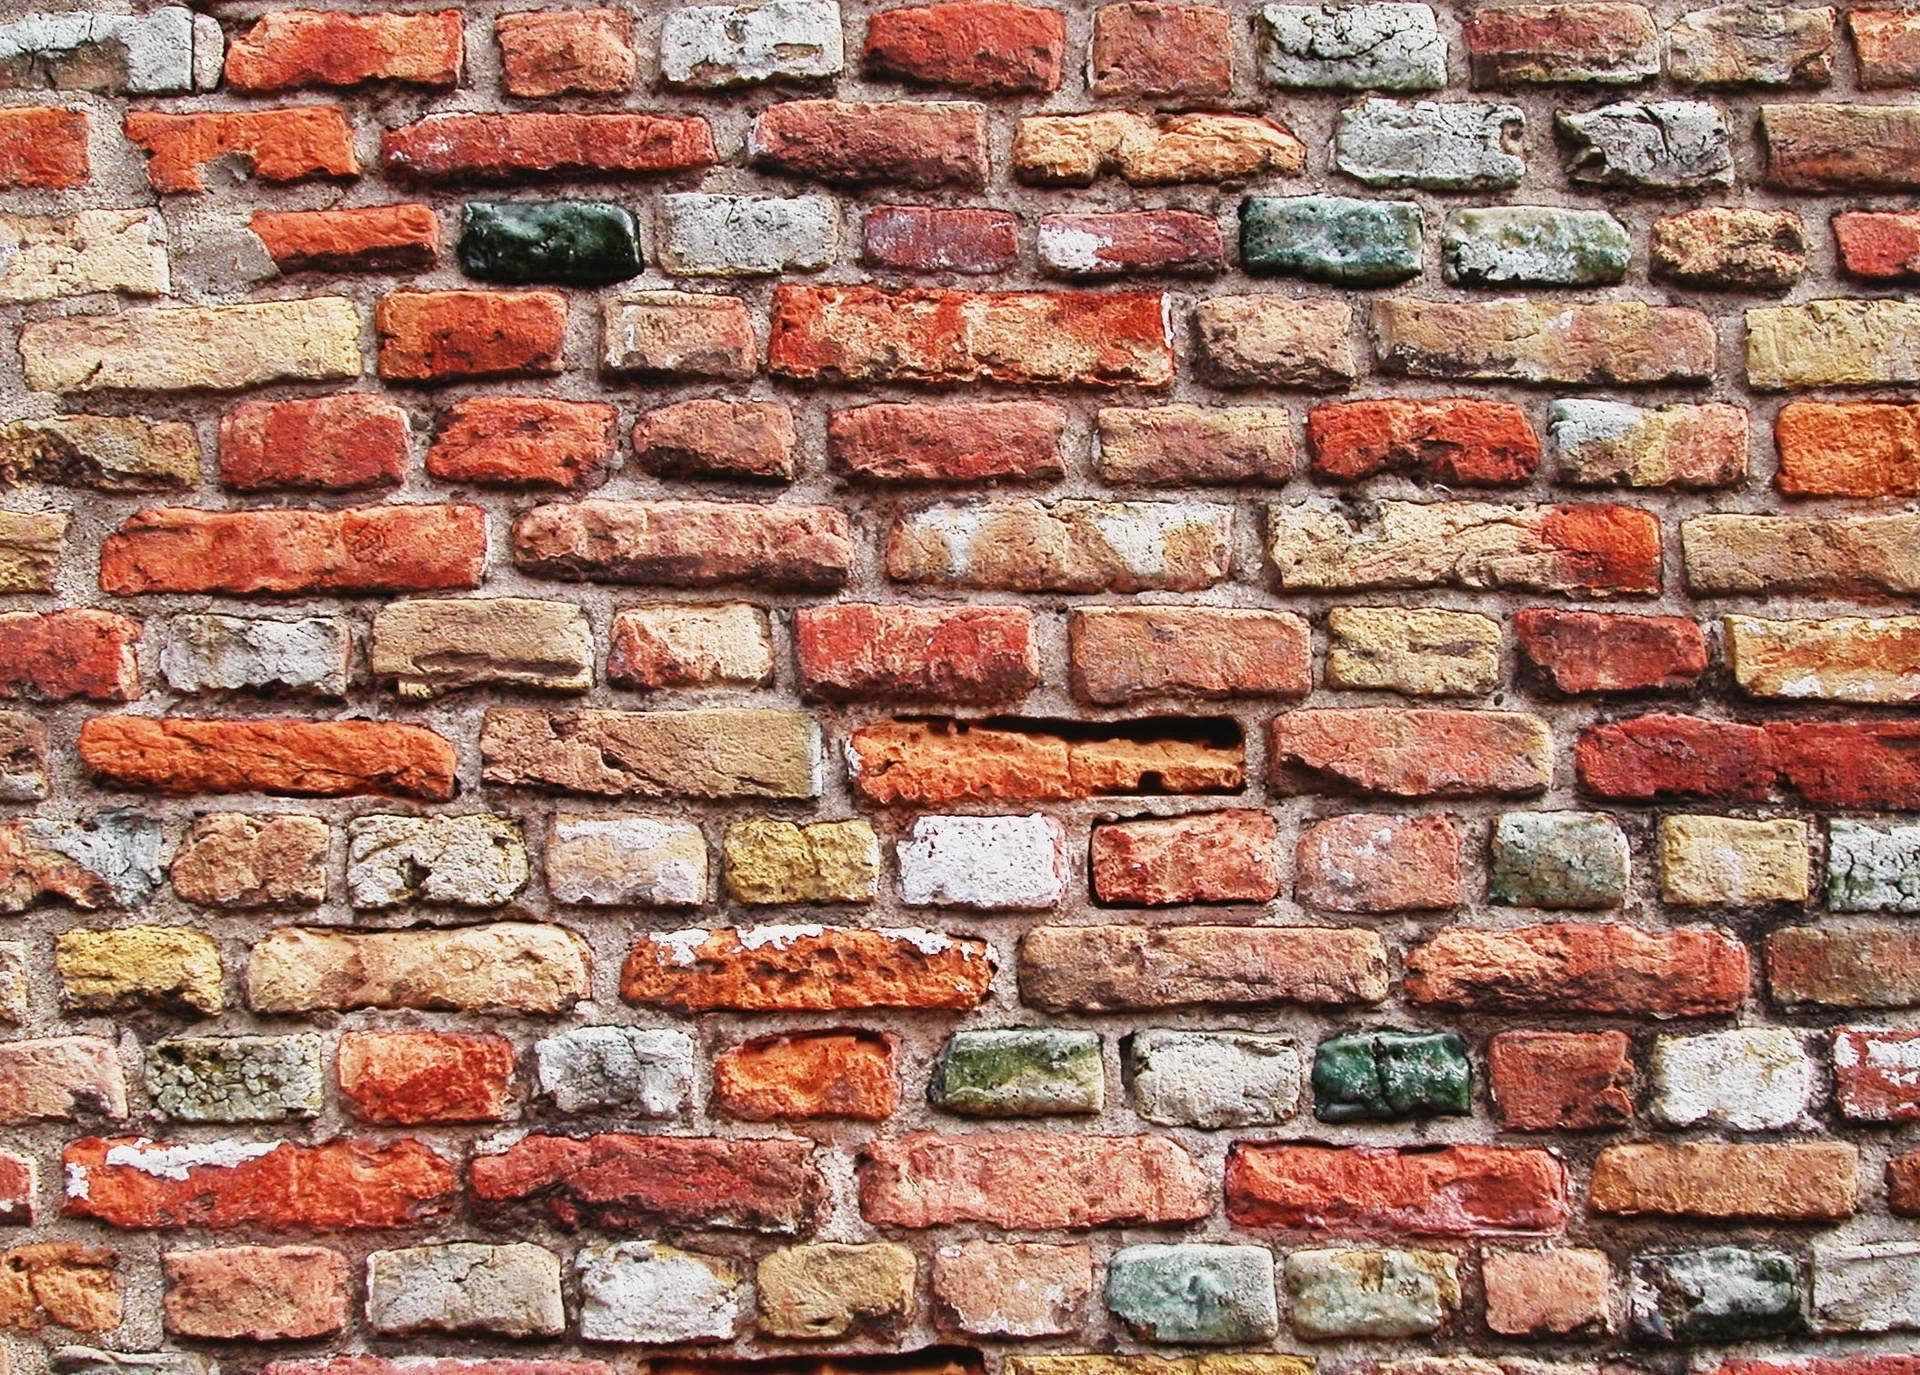 Brick Wallpaper Images - Free Download on Freepik